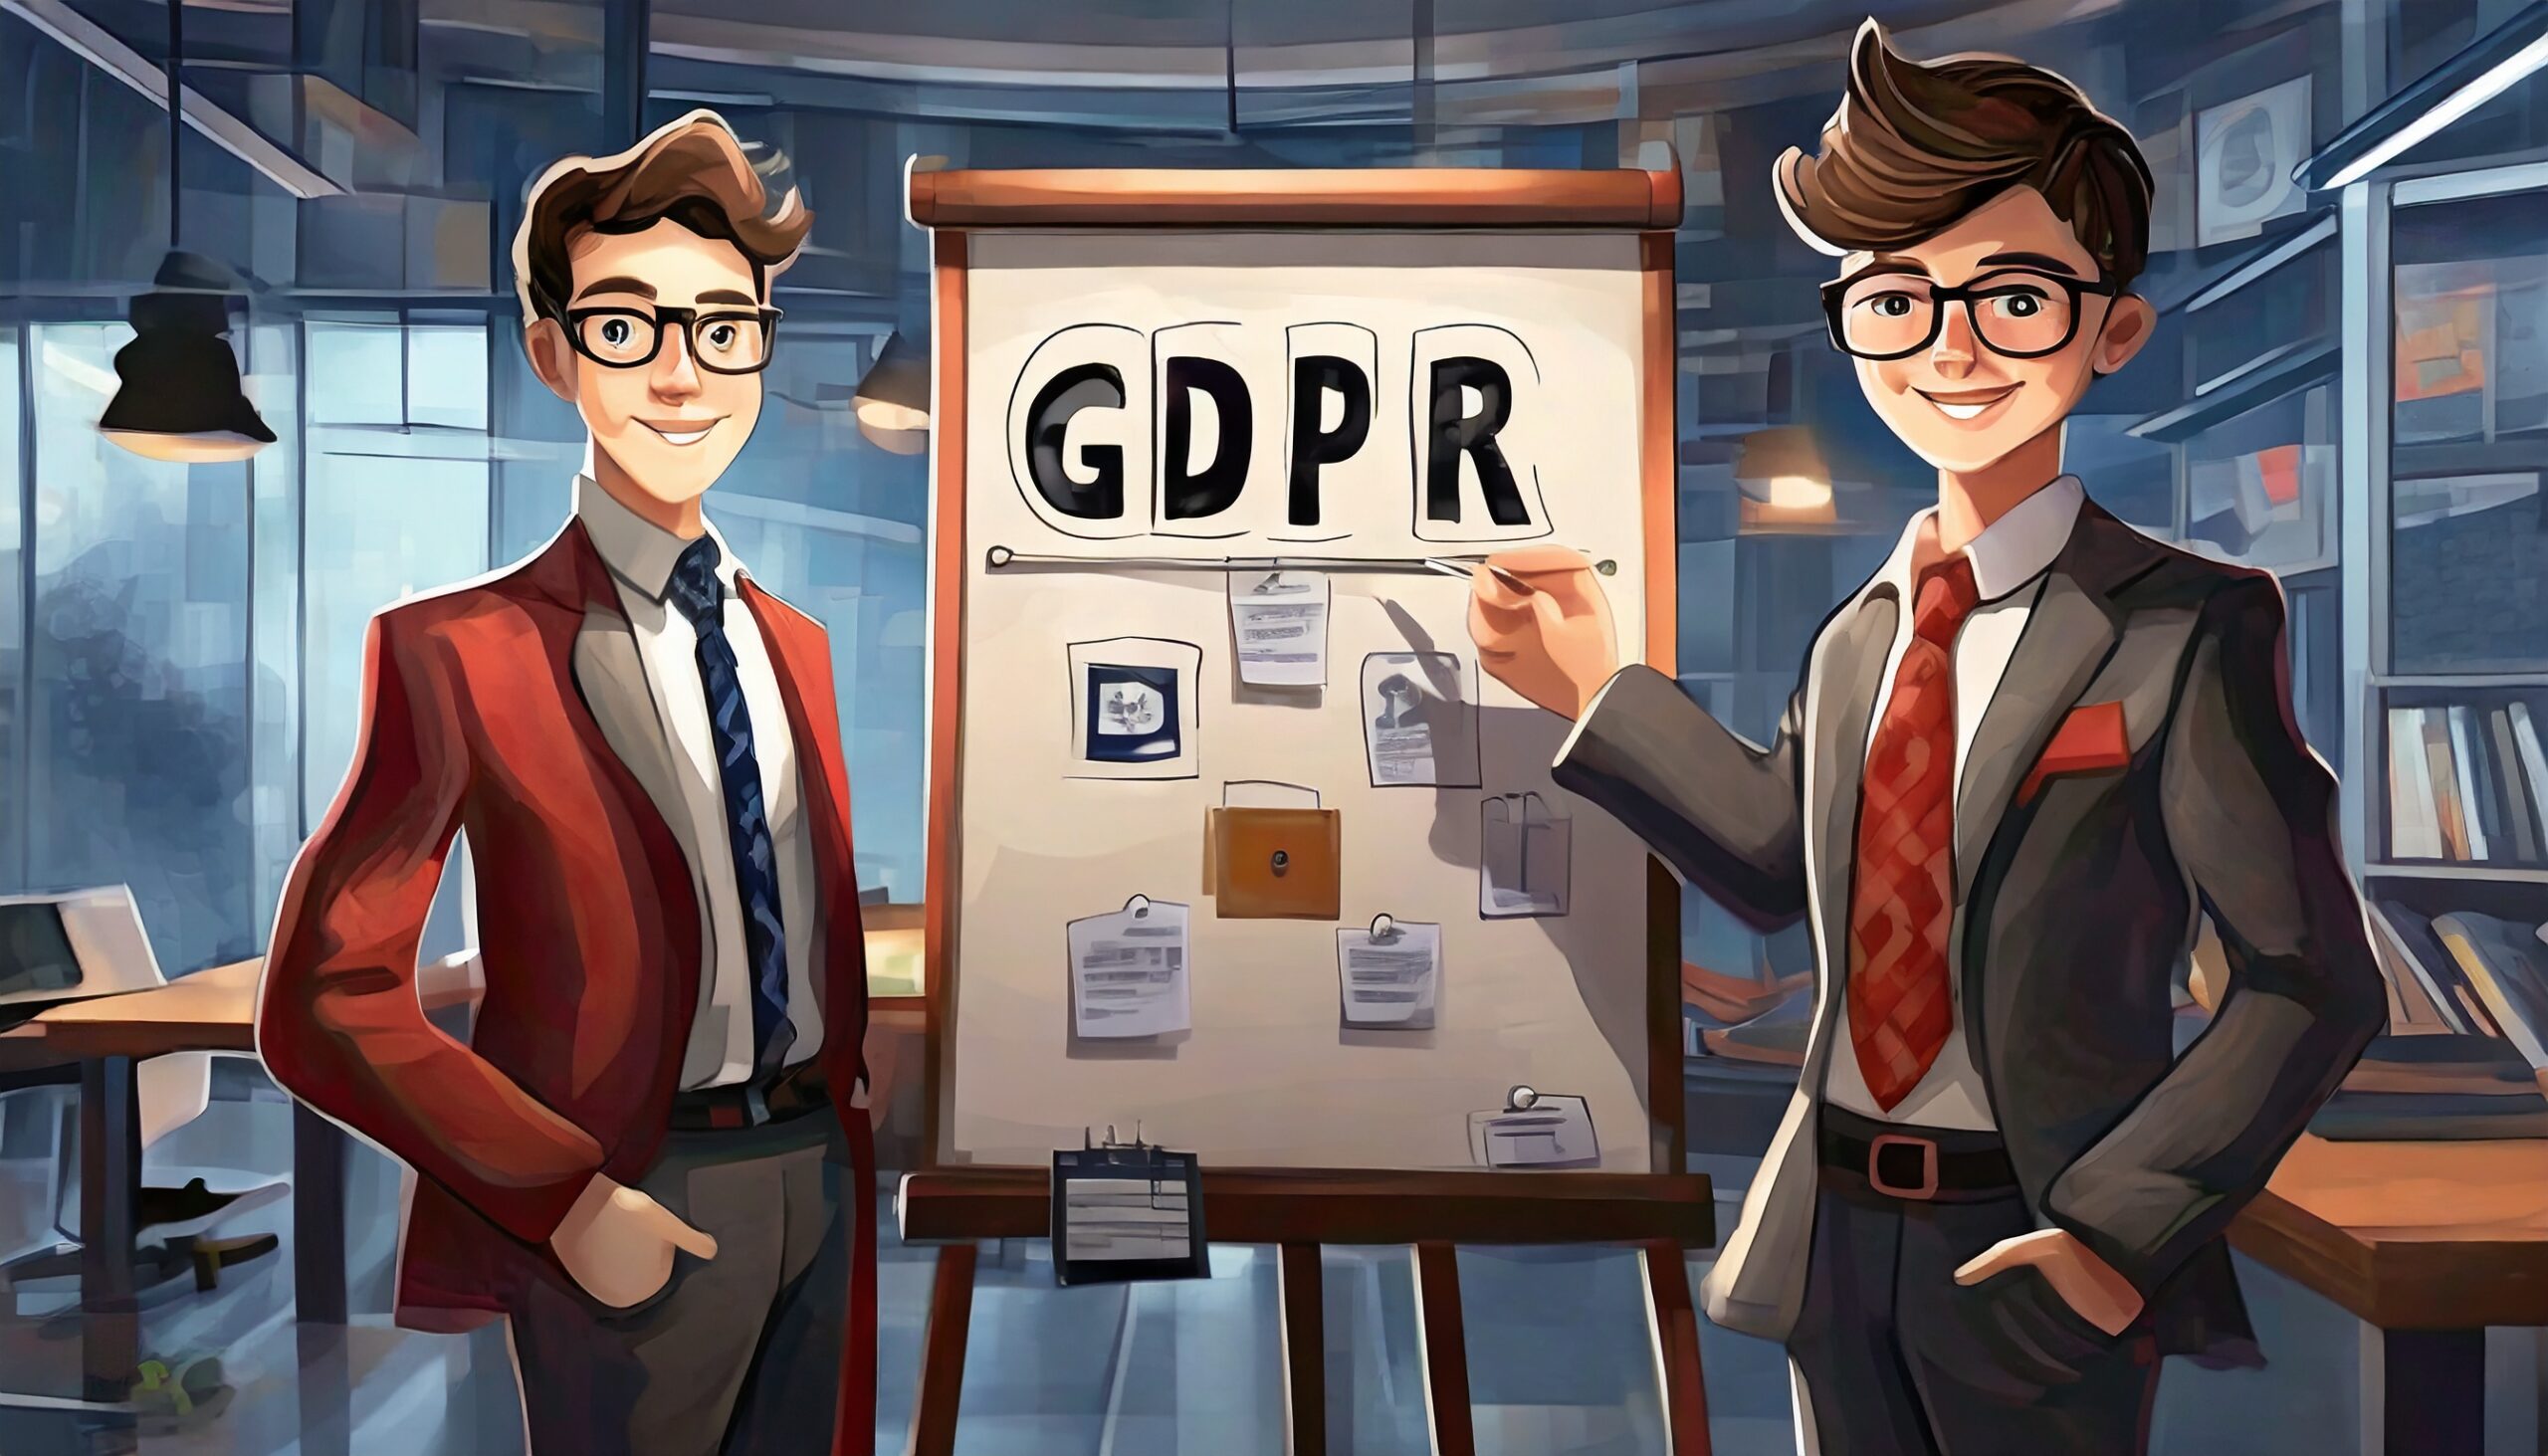 Vektorgrafikk med to personer foran en tavle som viser elementer for god GDPR. Illustrerer viktigheten av å bygge en god personvernkultur.